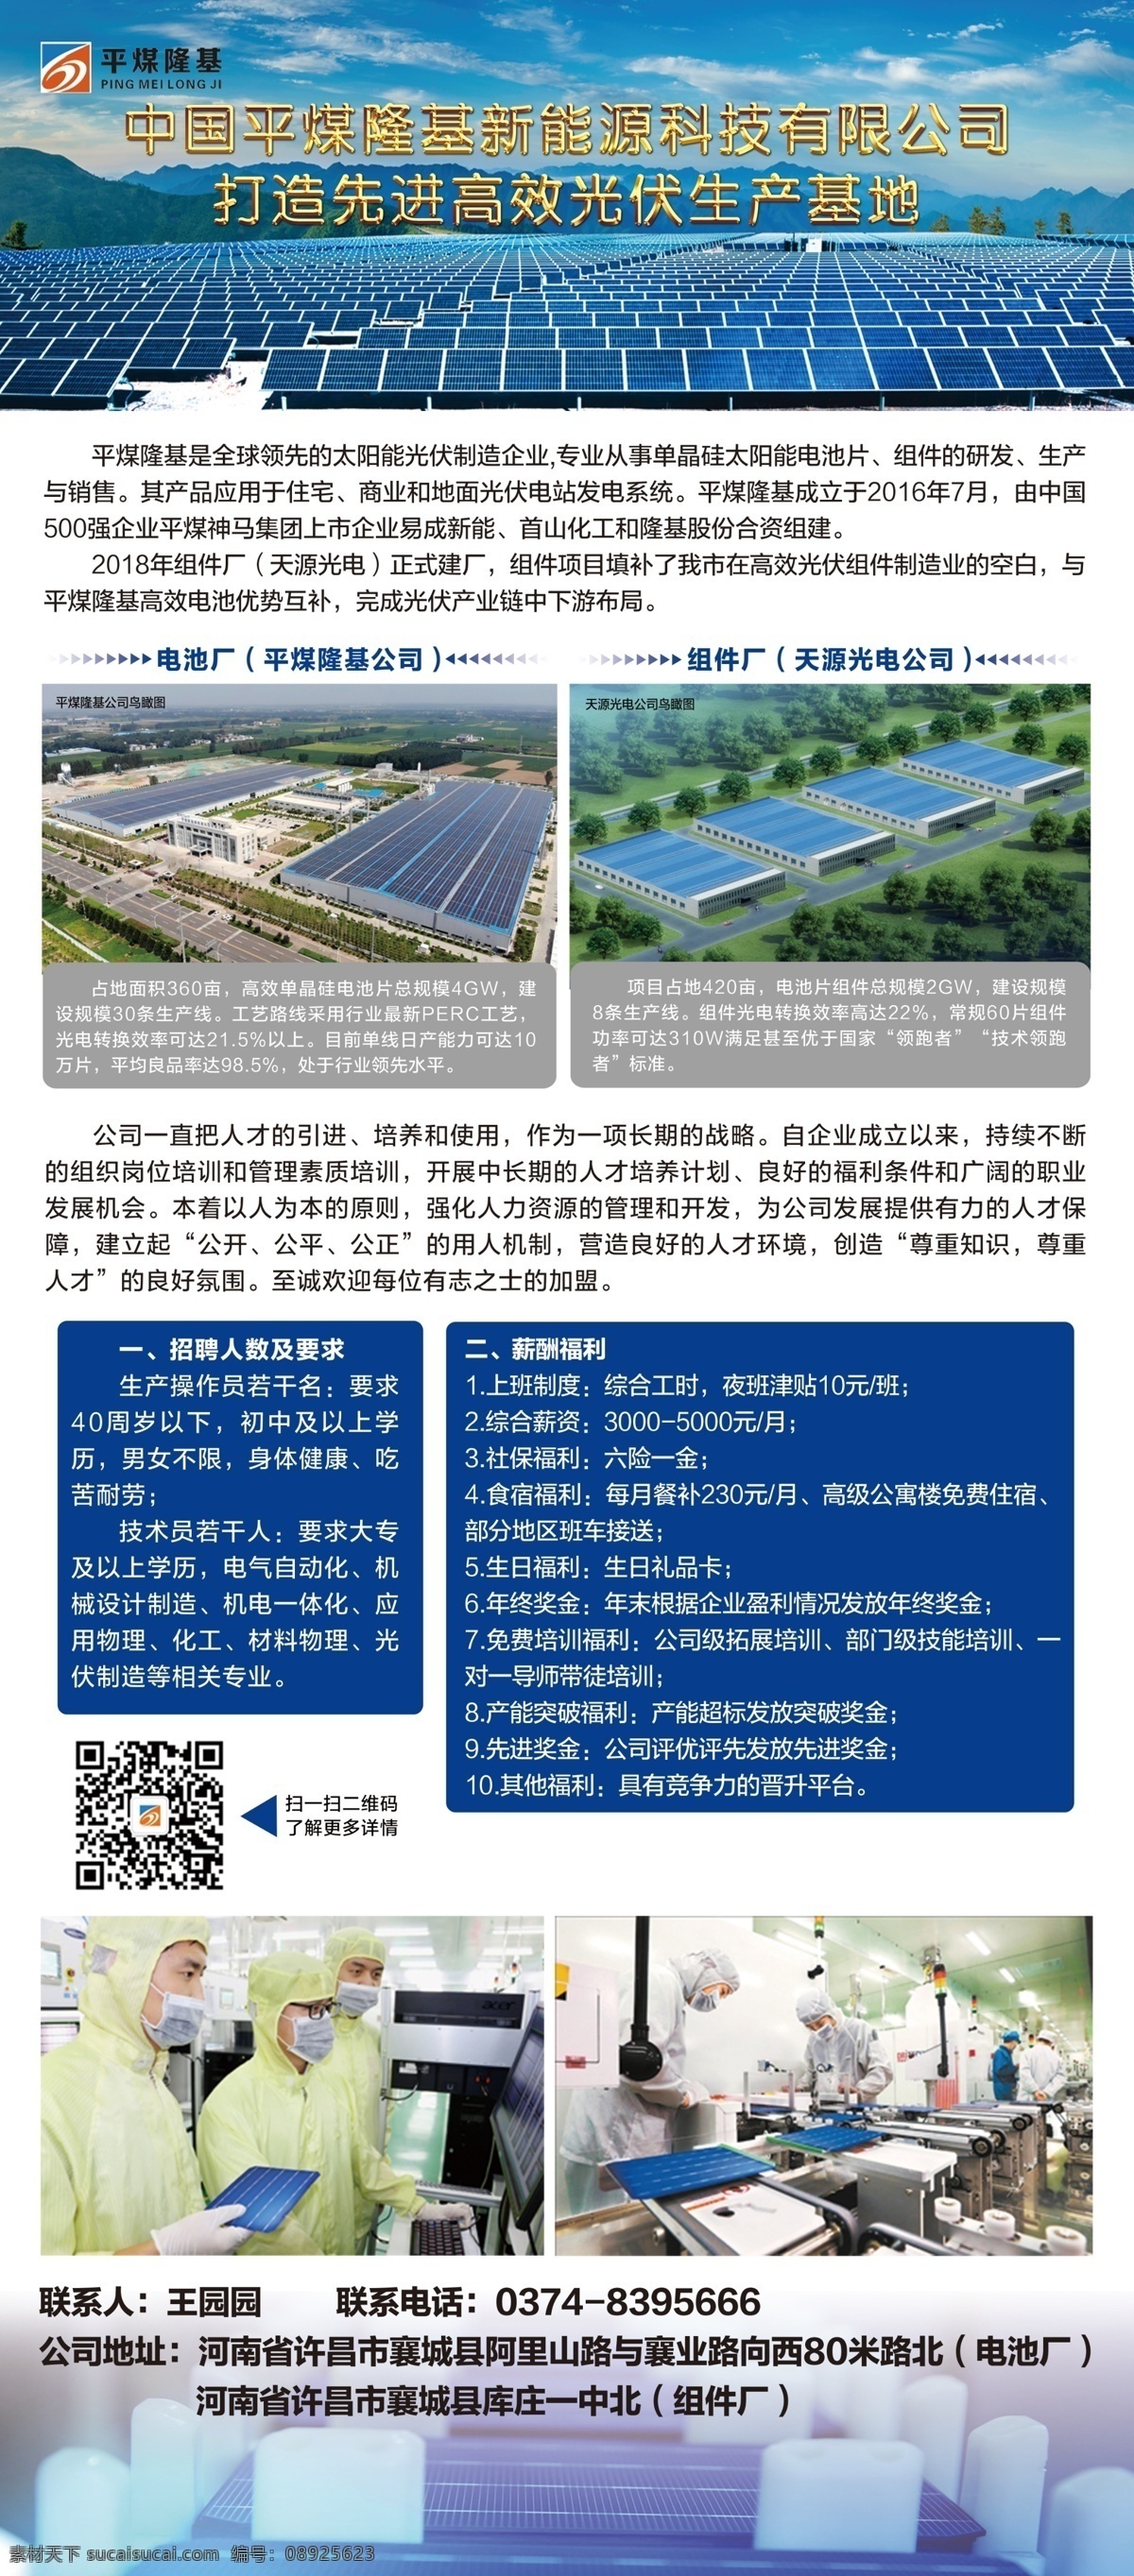 企业 工厂 照片 招聘 海报 x 展架 太阳能电池片 绿能行业 技术员招聘 光伏组件